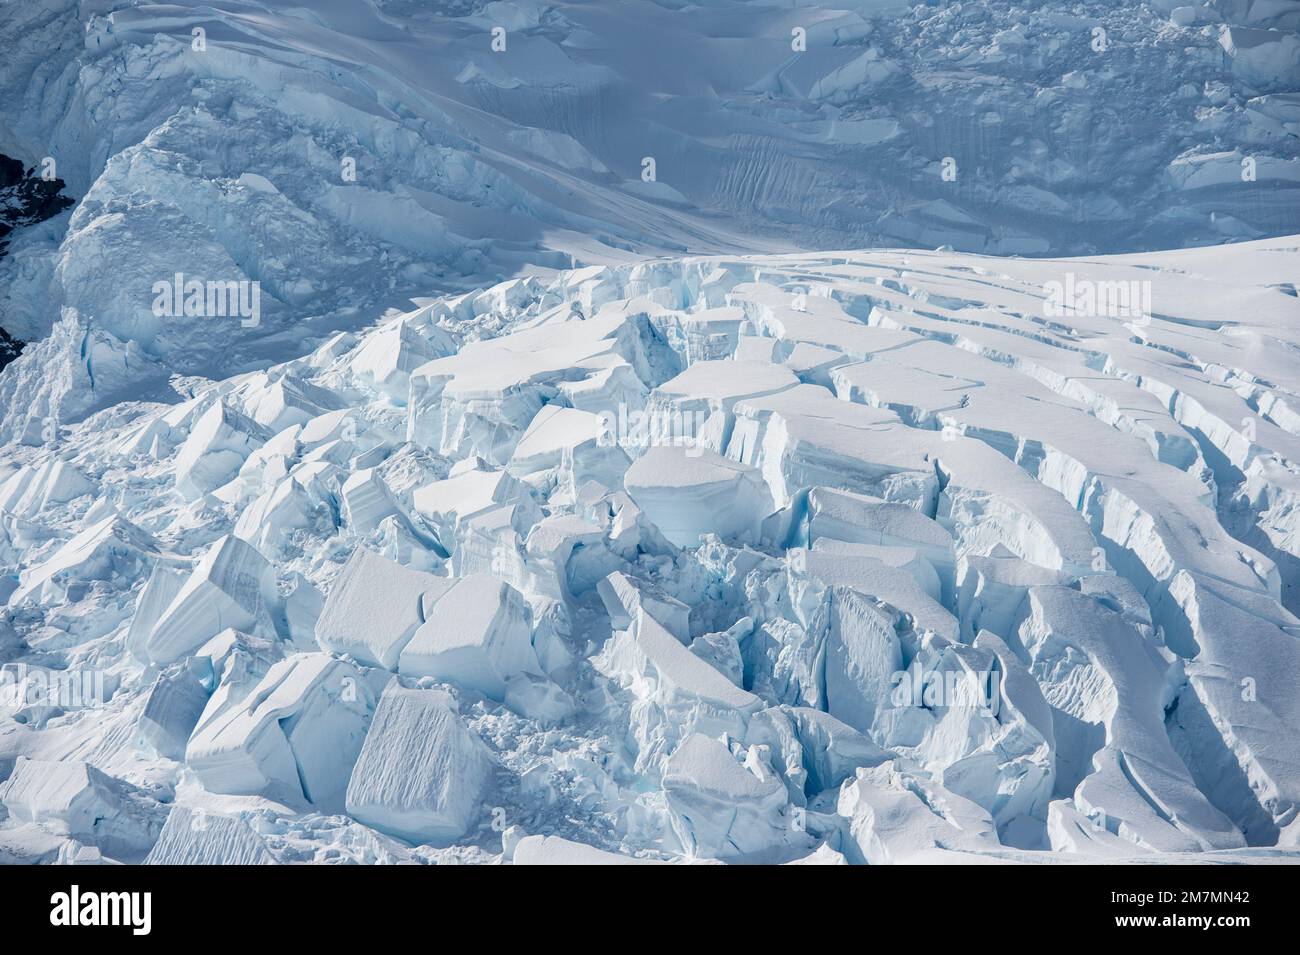 Der Gletscher im Hafen von Neko, antarktis, knackte, bevor er ins Meer fiel Stockfoto